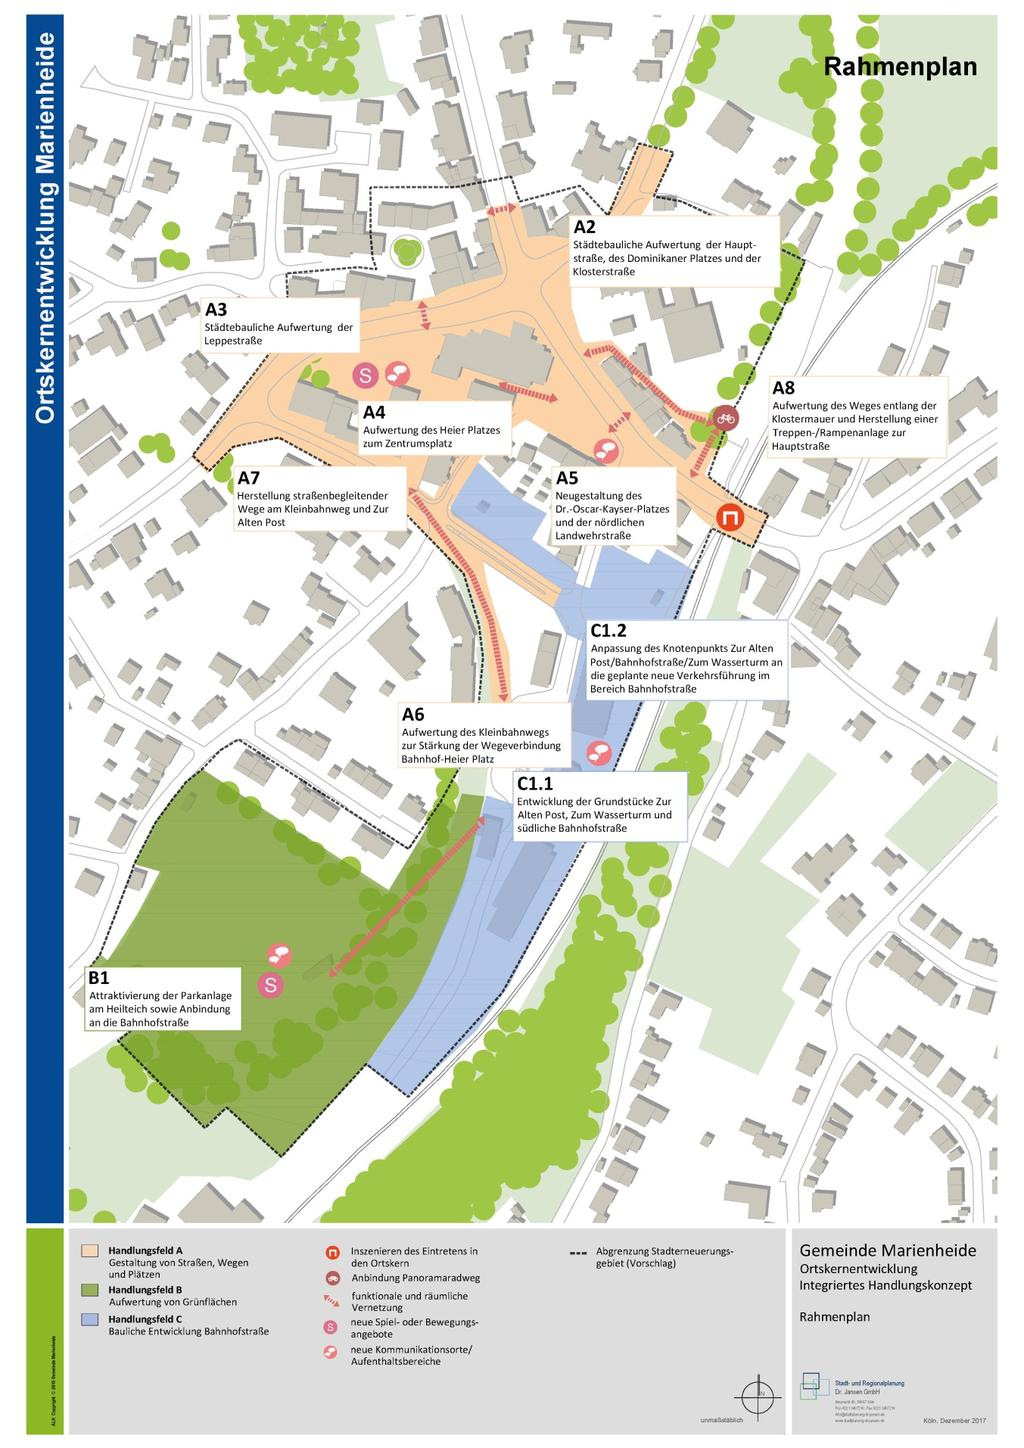 Abbildung 1: Rahmenplan Gemeinde Marienheide